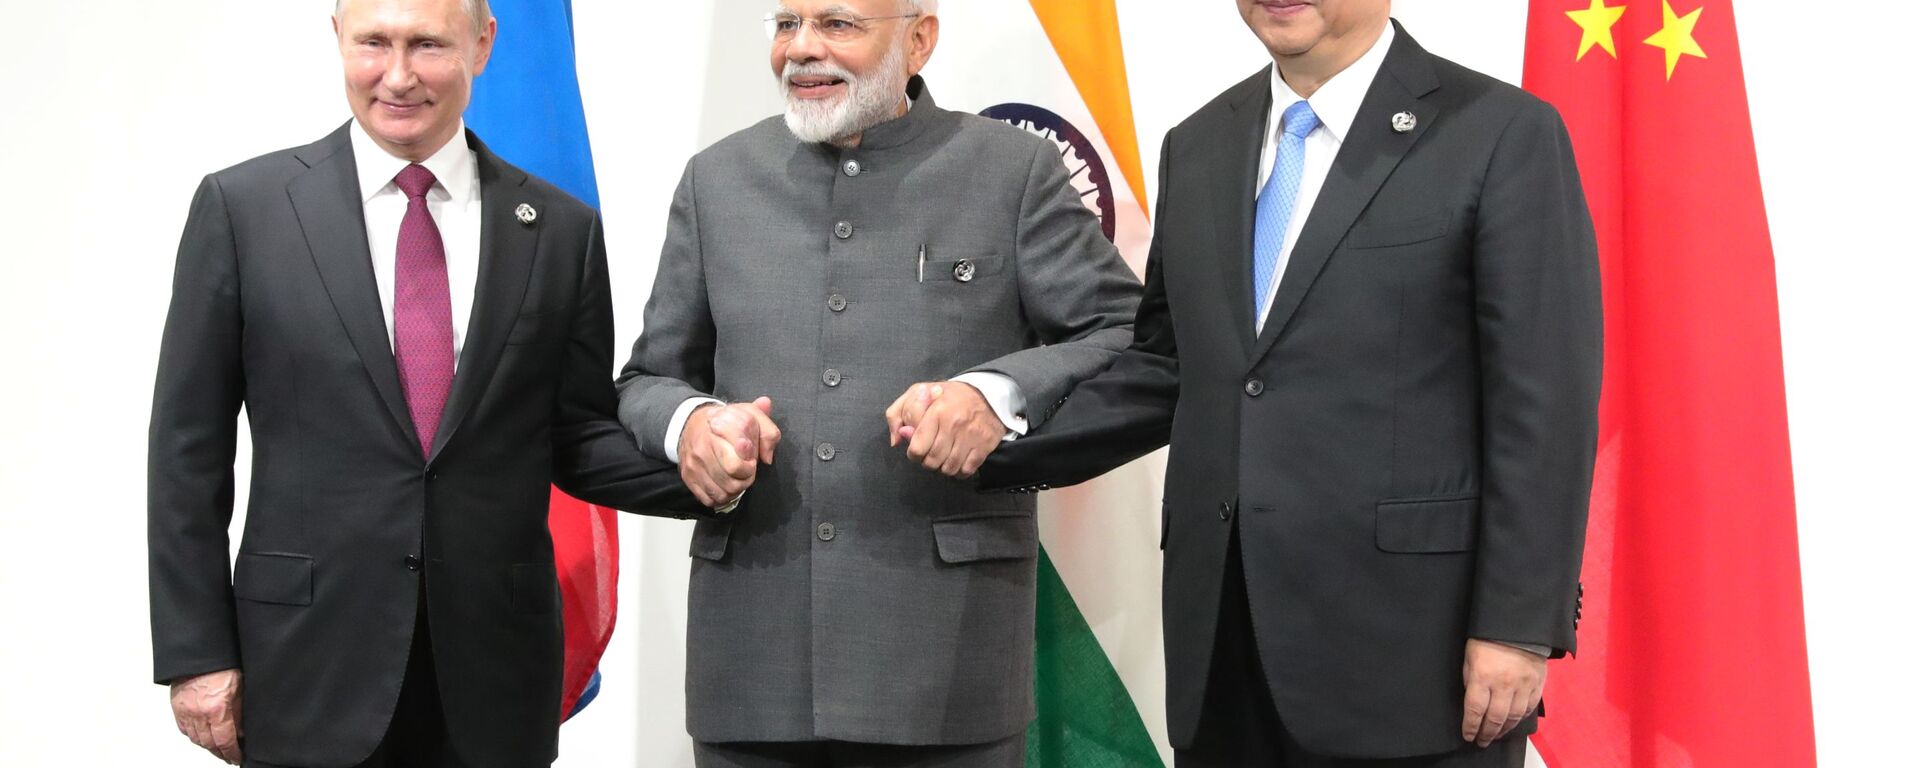 Президент РФ Владимир Путин, премьер-министр Индии Нарендра Моди и председатель Китайской Народной Республики (КНР) Си Цзиньпин (слева направо)  - Sputnik Таджикистан, 1920, 25.09.2021